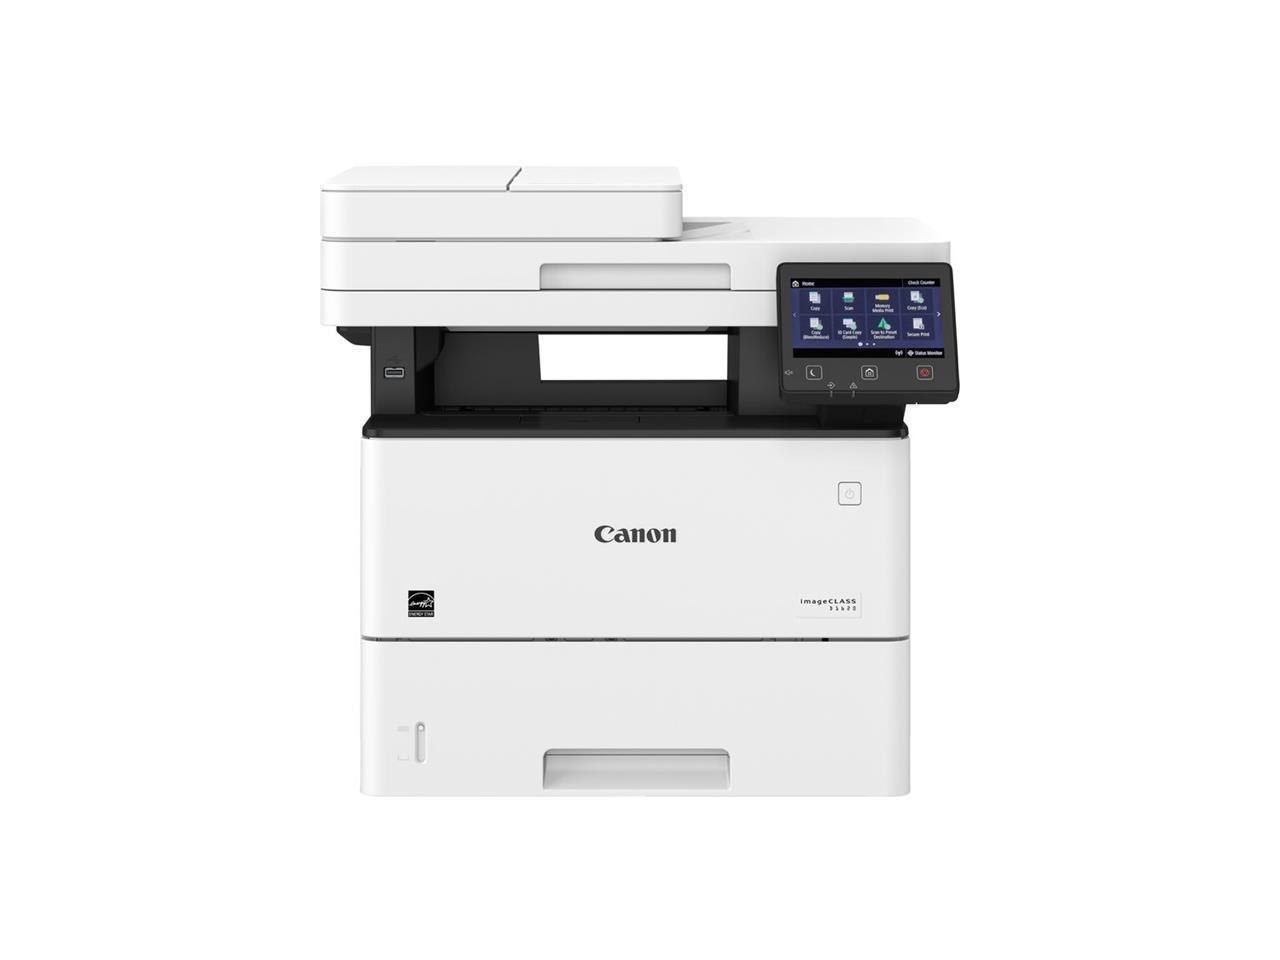 Canon - 2223C024 - Canon imageCLASS D D1620 Laser Multifunction Printer - Monochrome - Copier/Printer/Scanner - 45 PPM